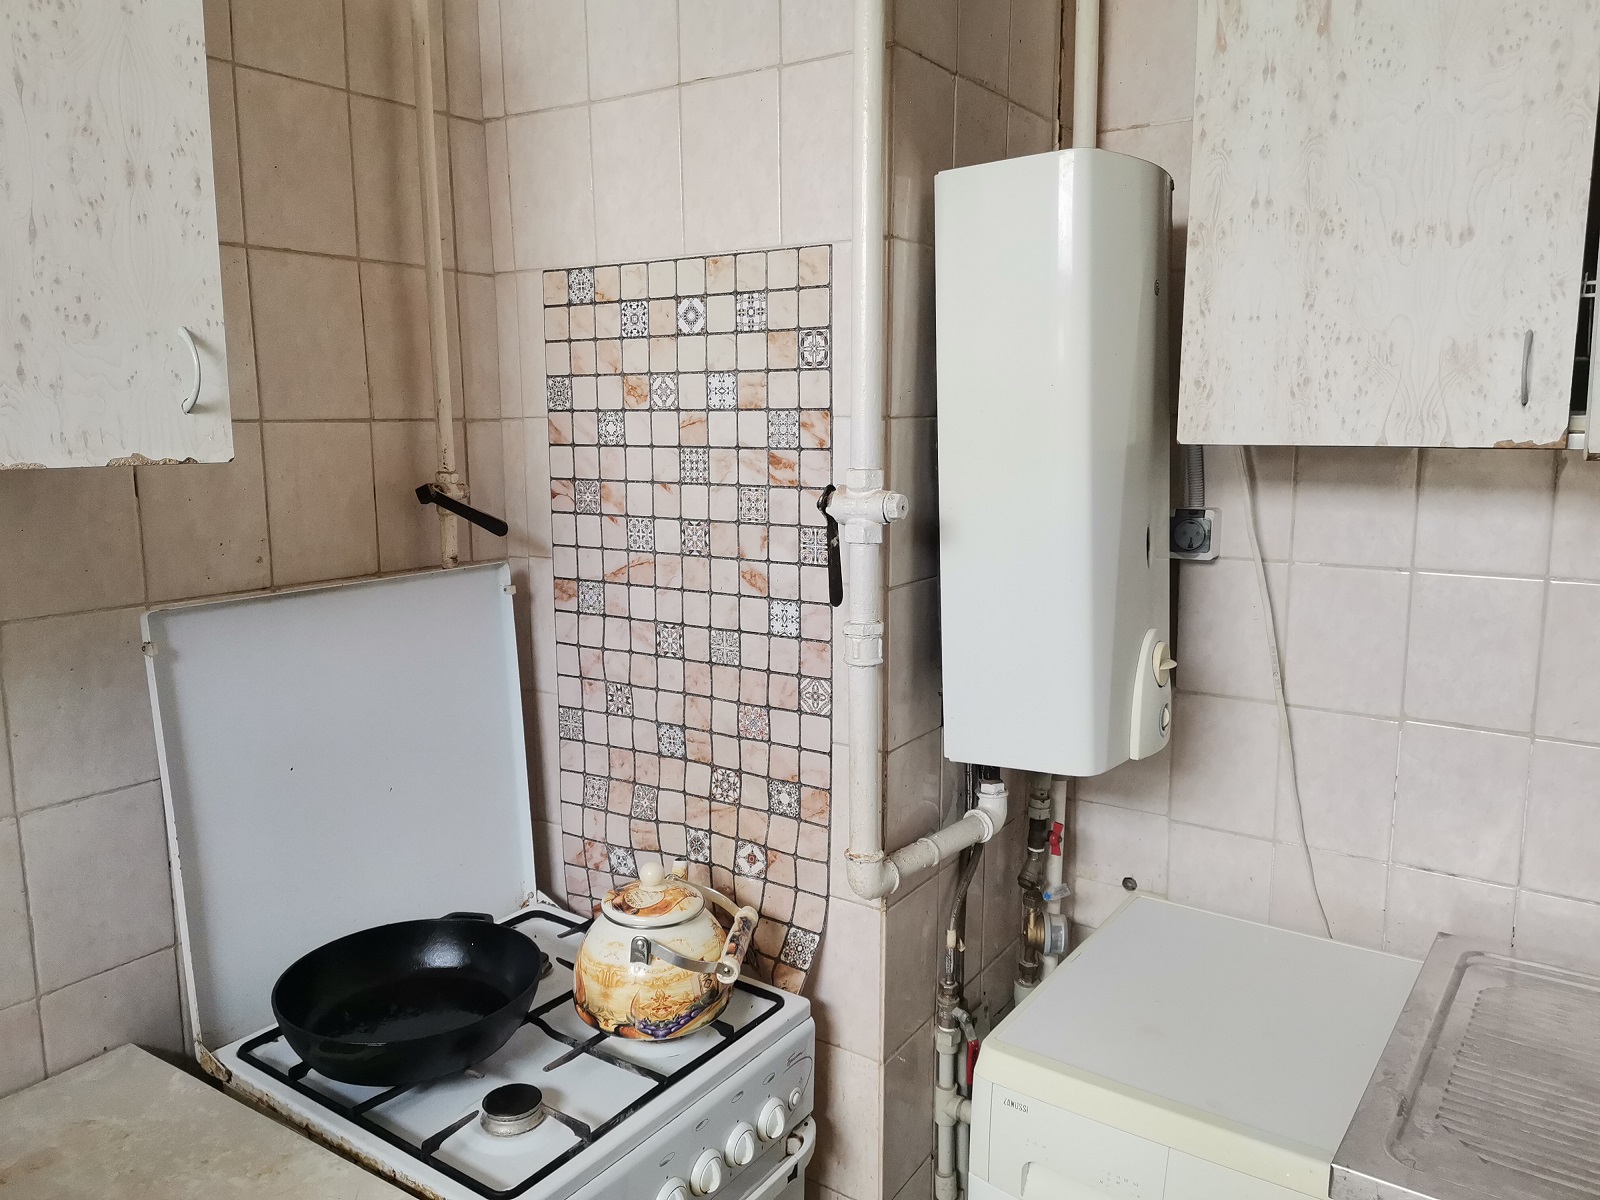 Квартира без горячей воды. Дома без горячего водоснабжения Москва.